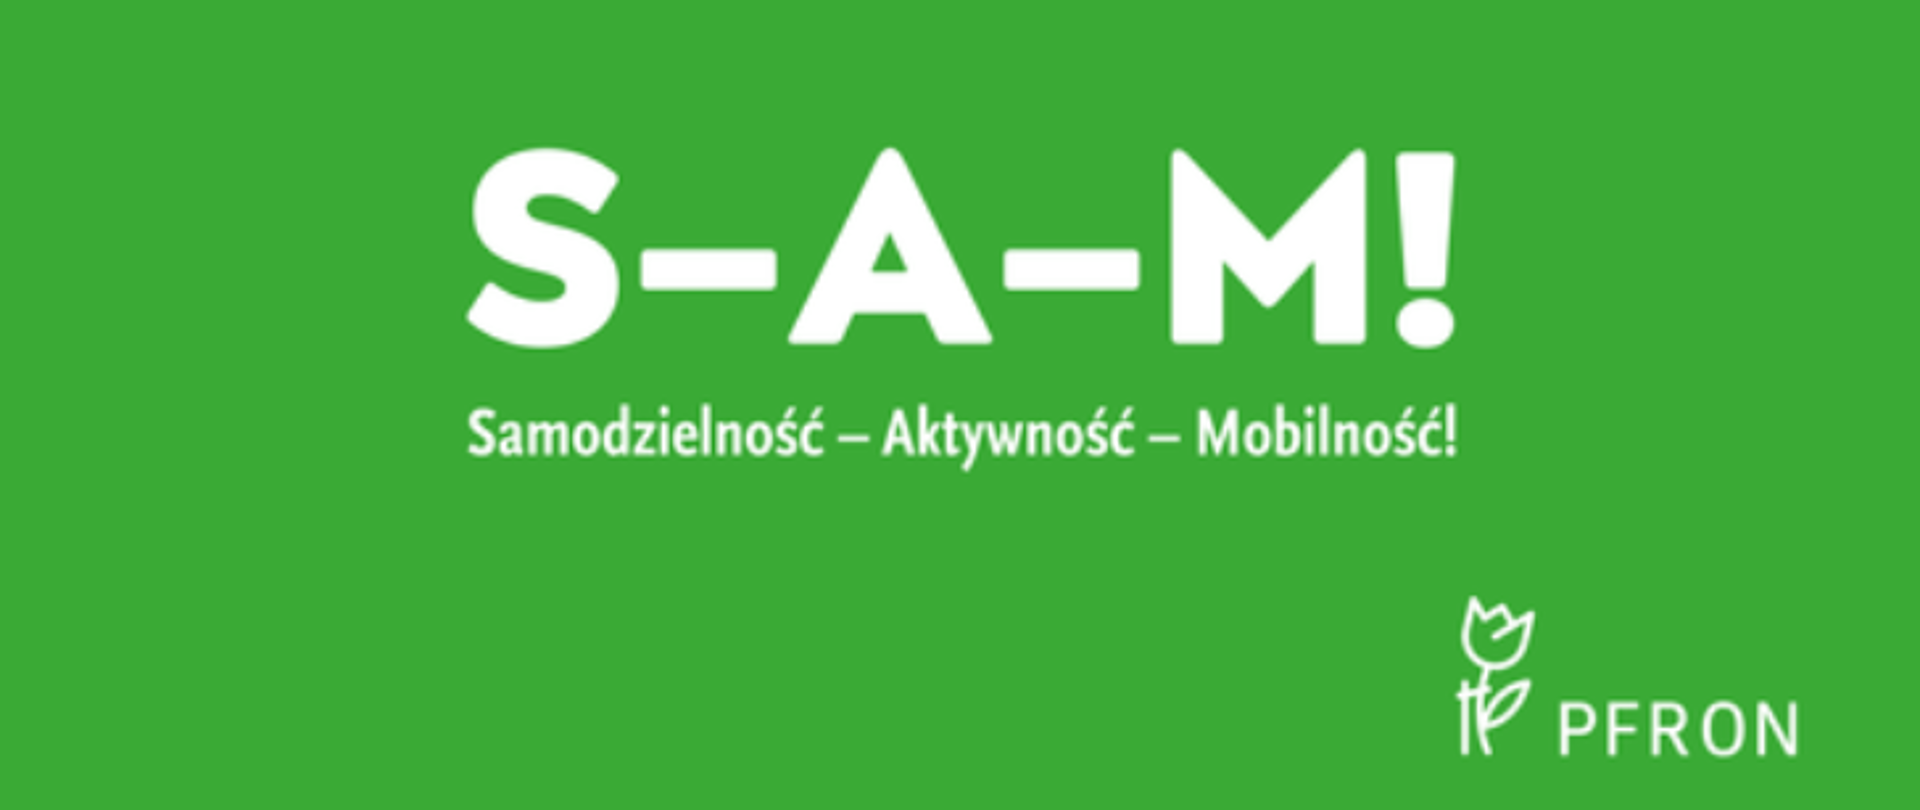 Logotyp rządowego programu realizowanego przez Państwowy Fundusz Rehabilitacji Osób Niepełnosprawnych - Samodzielność - Aktywność - Mobilność!. Białe napisy na zielonym tle.